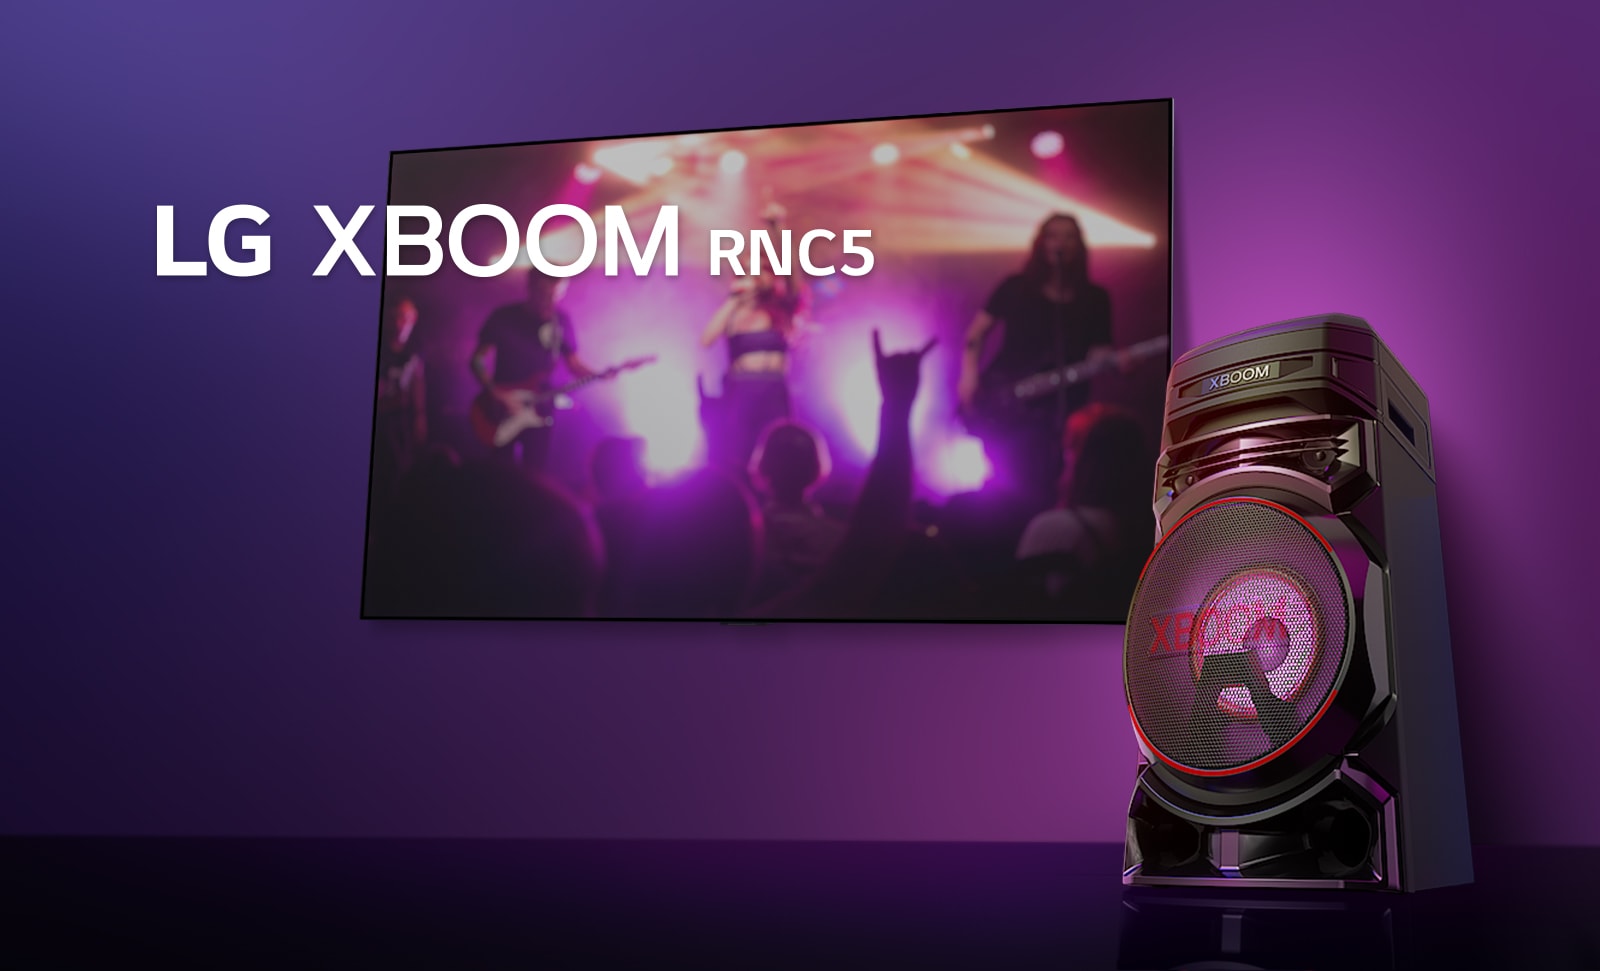 "طريقة عرض بزاوية منخفضة للجانب الأيمن لسماعات LG XBOOM RNC5 مقابل خلفية بنفسجية.  أضواء XBOOM لونها بنفسجي أيضًا. وتعرض شاشة تلفزيون مشهد حفلة موسيقية."